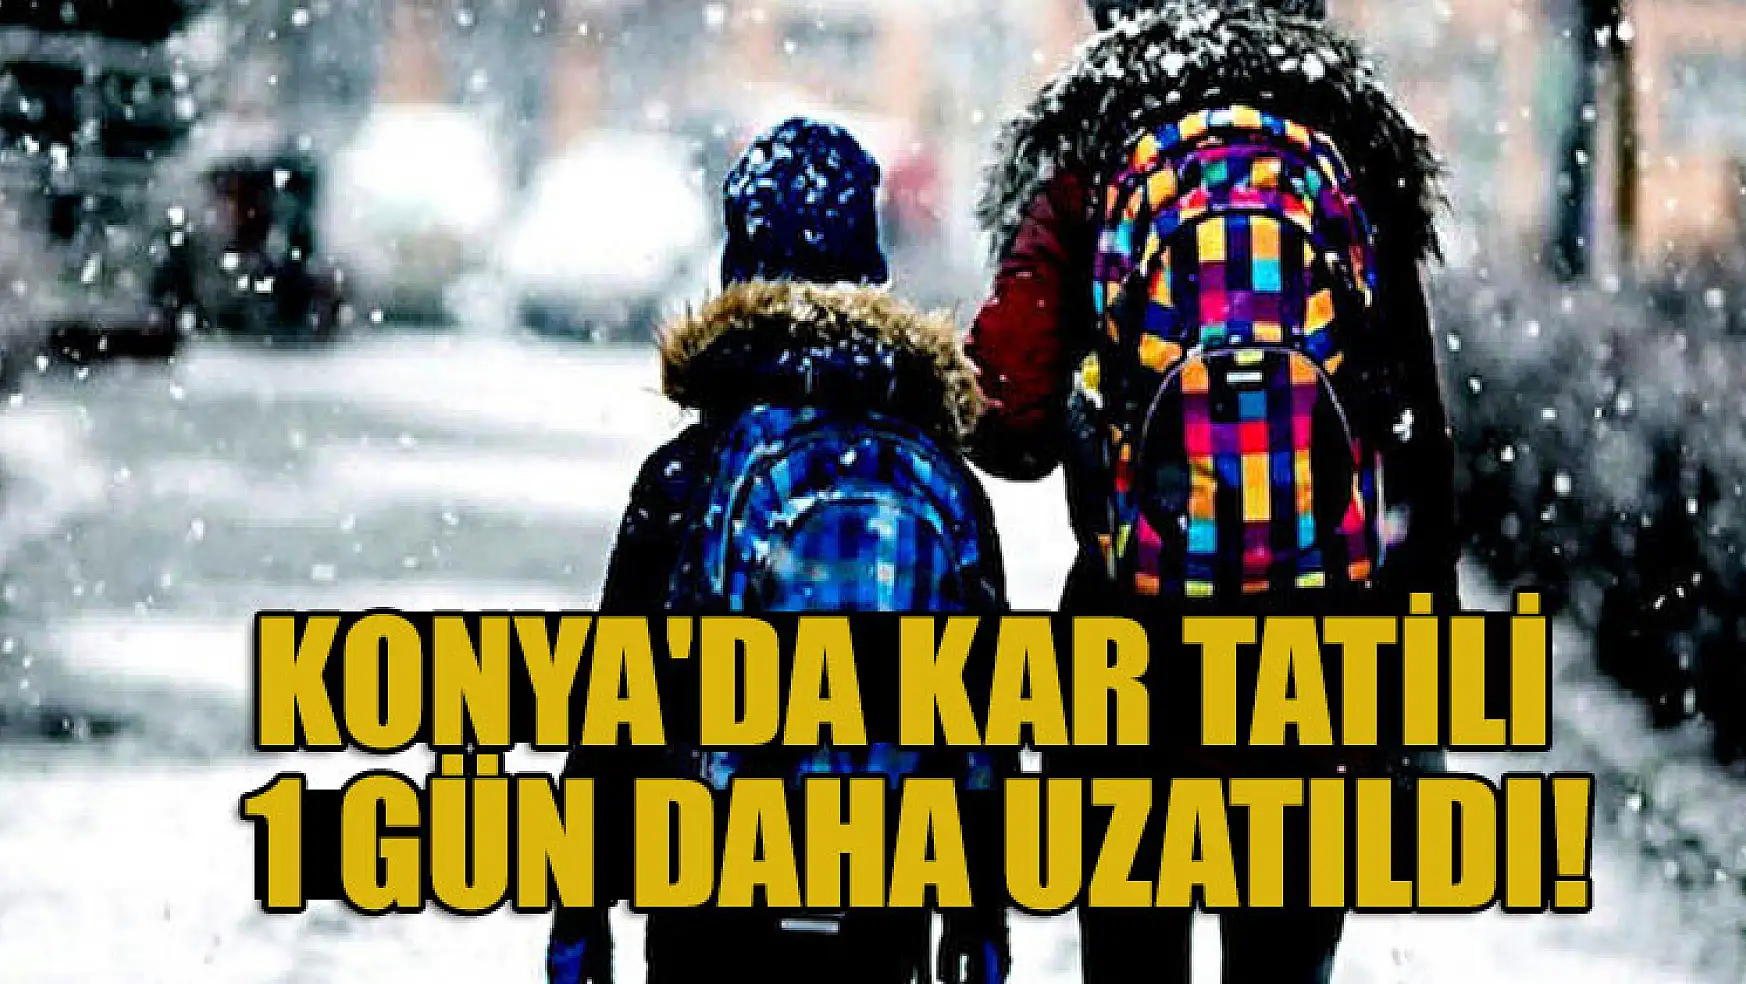 Konya'da kar tatili 1 gün daha uzatıldı